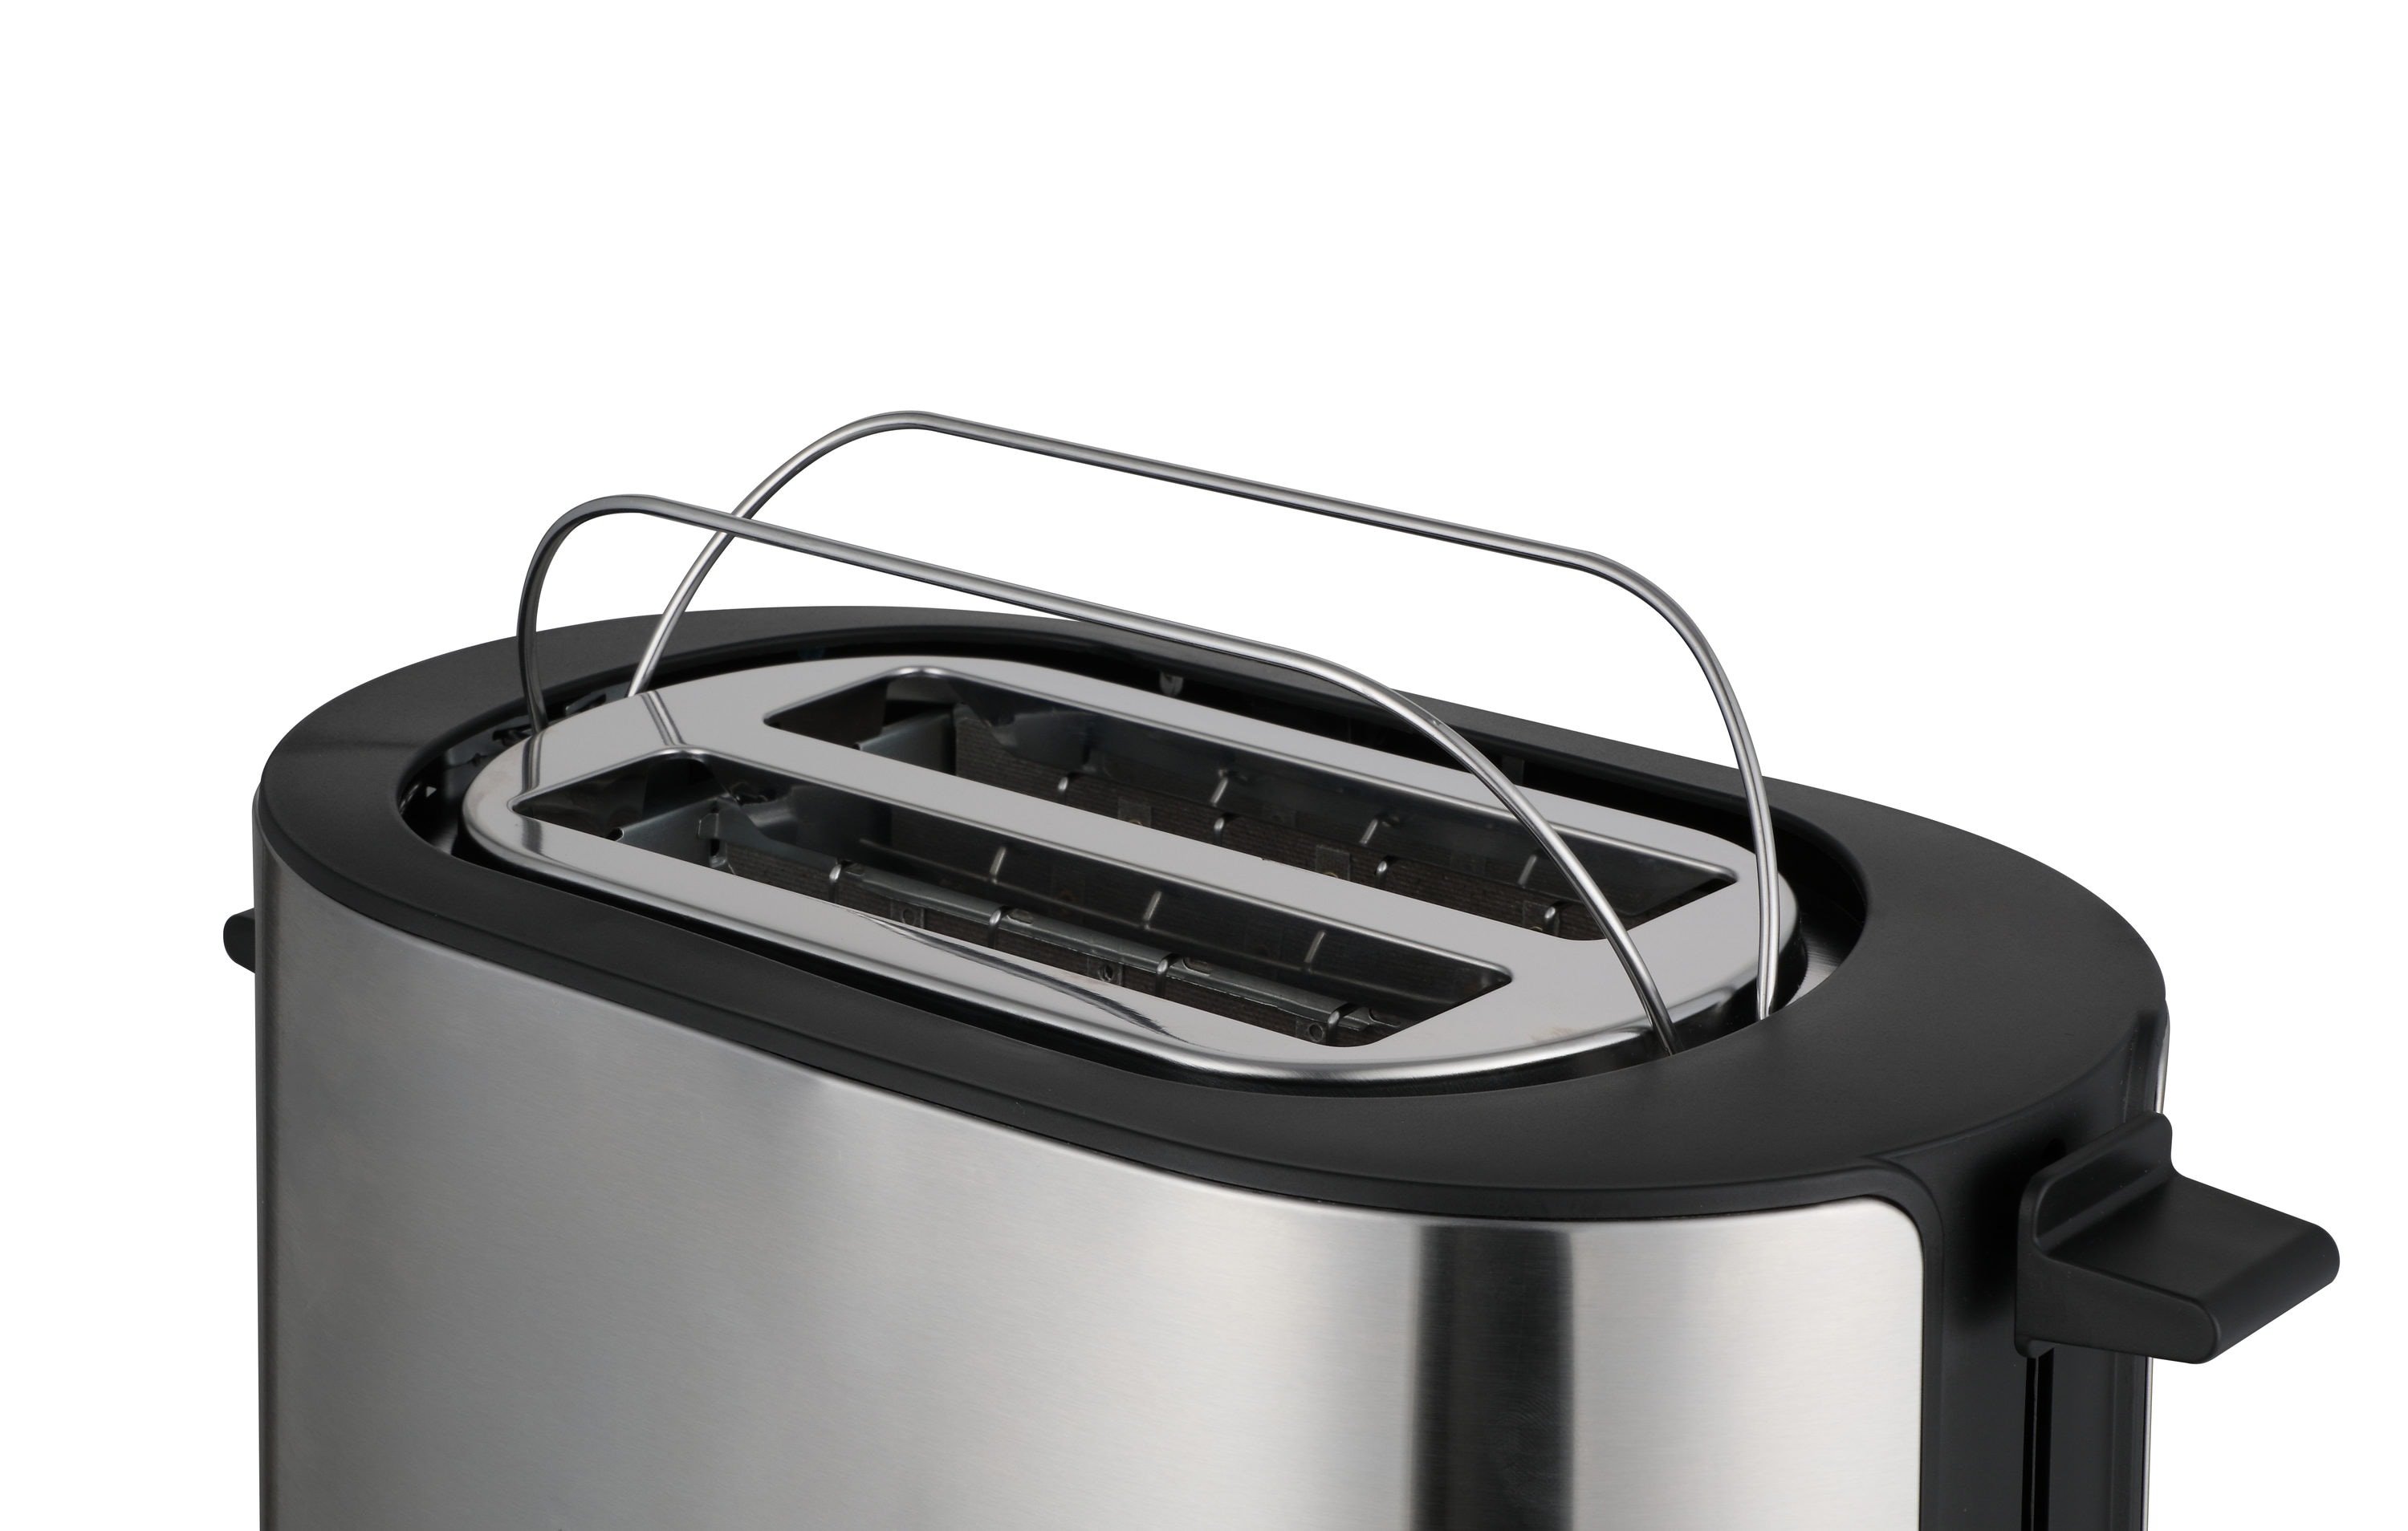 Highland 4-Slice Stainless Steel Toaster Oven (1100-Watt)